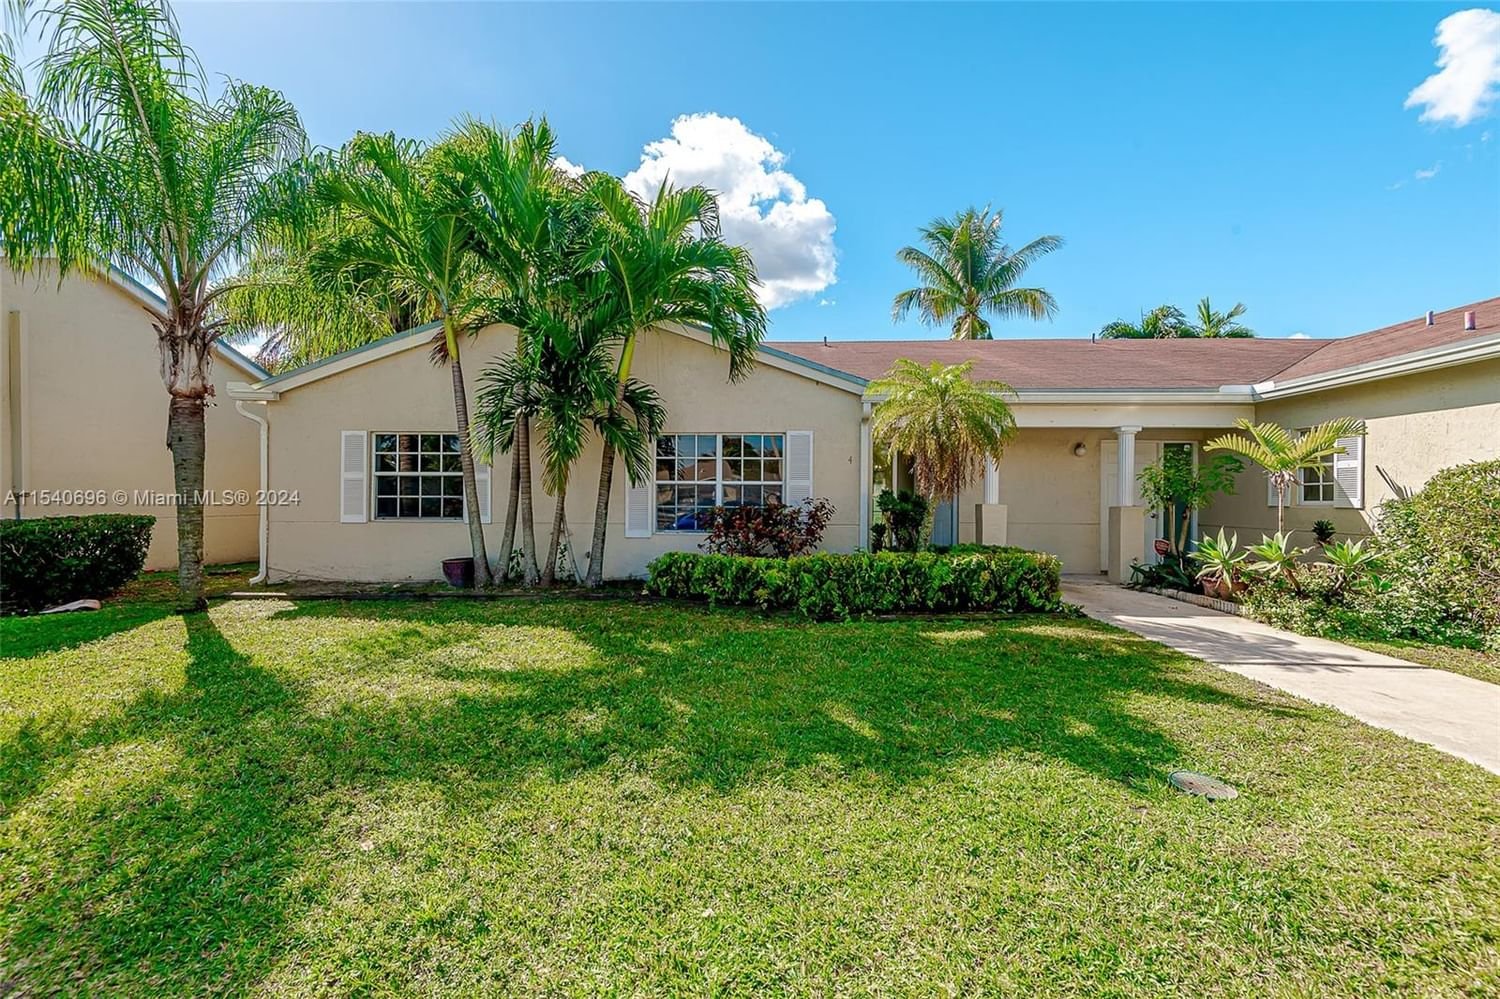 Real estate property located at 806 214th Ln #806-04, Miami-Dade County, SIERRA RIDGE CONDO D, Miami, FL